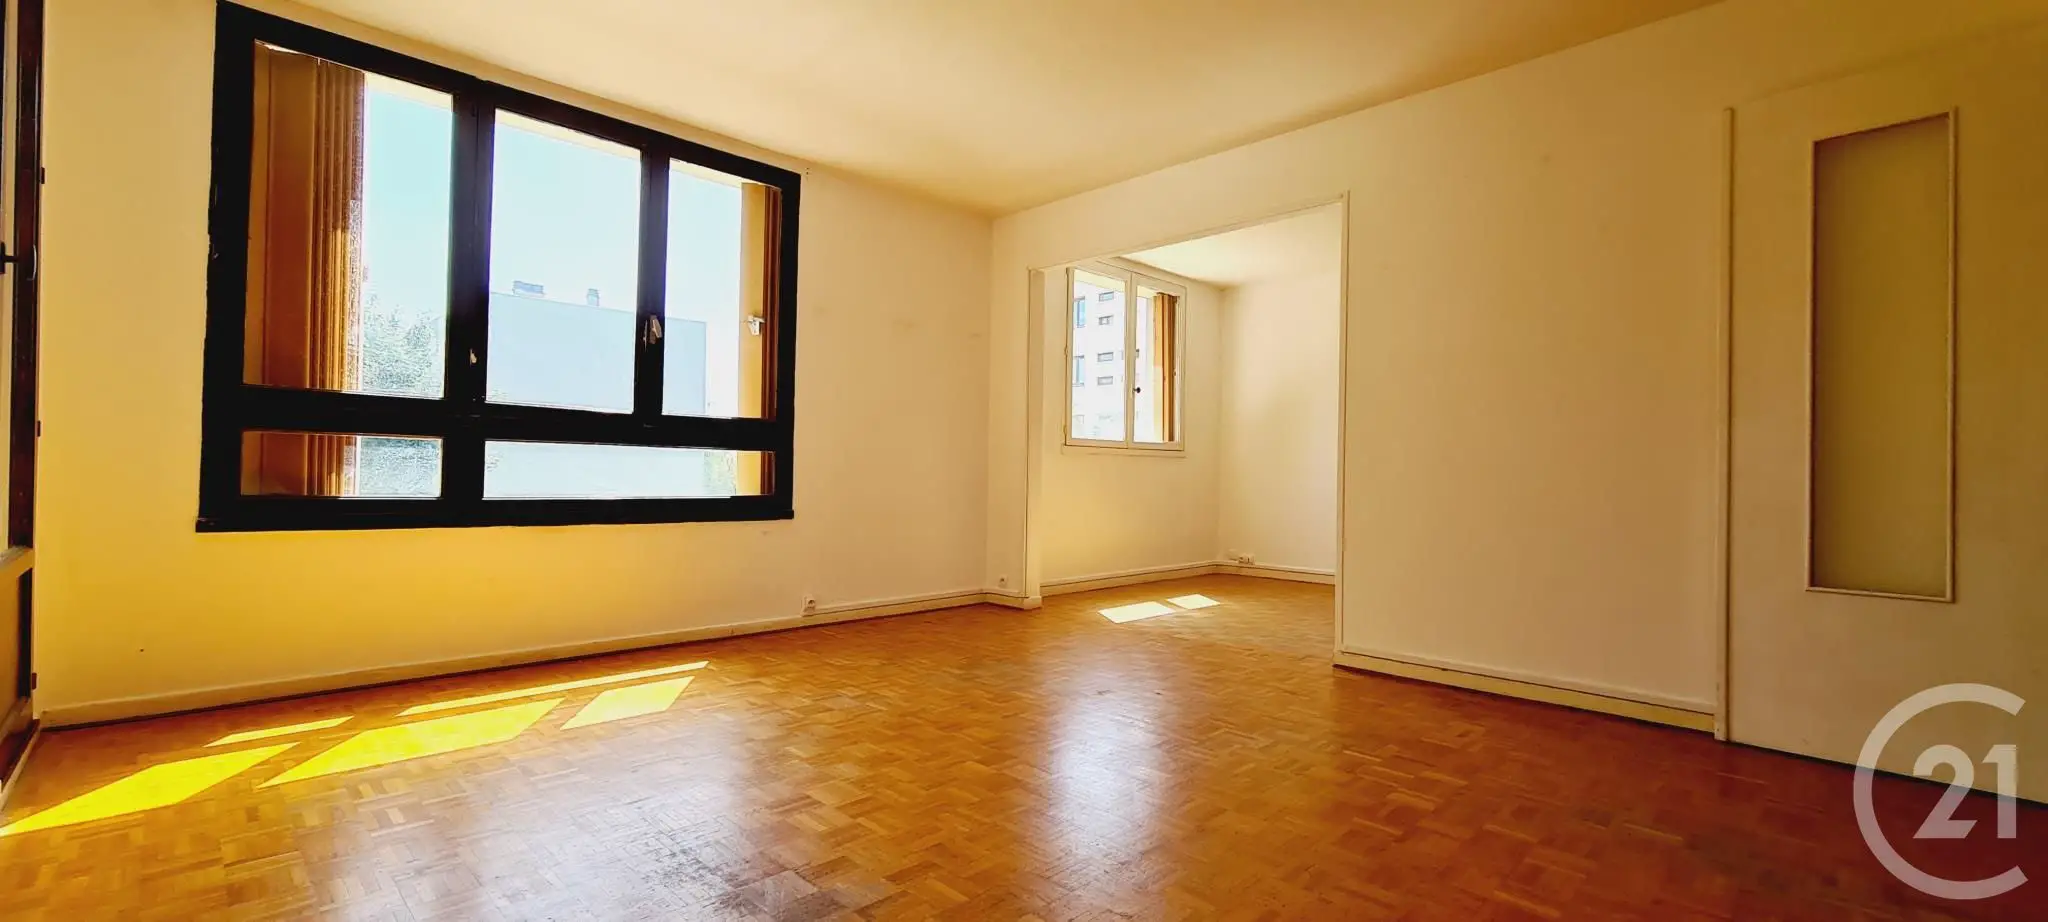 Location appartement 4 pièces 76,58 m2